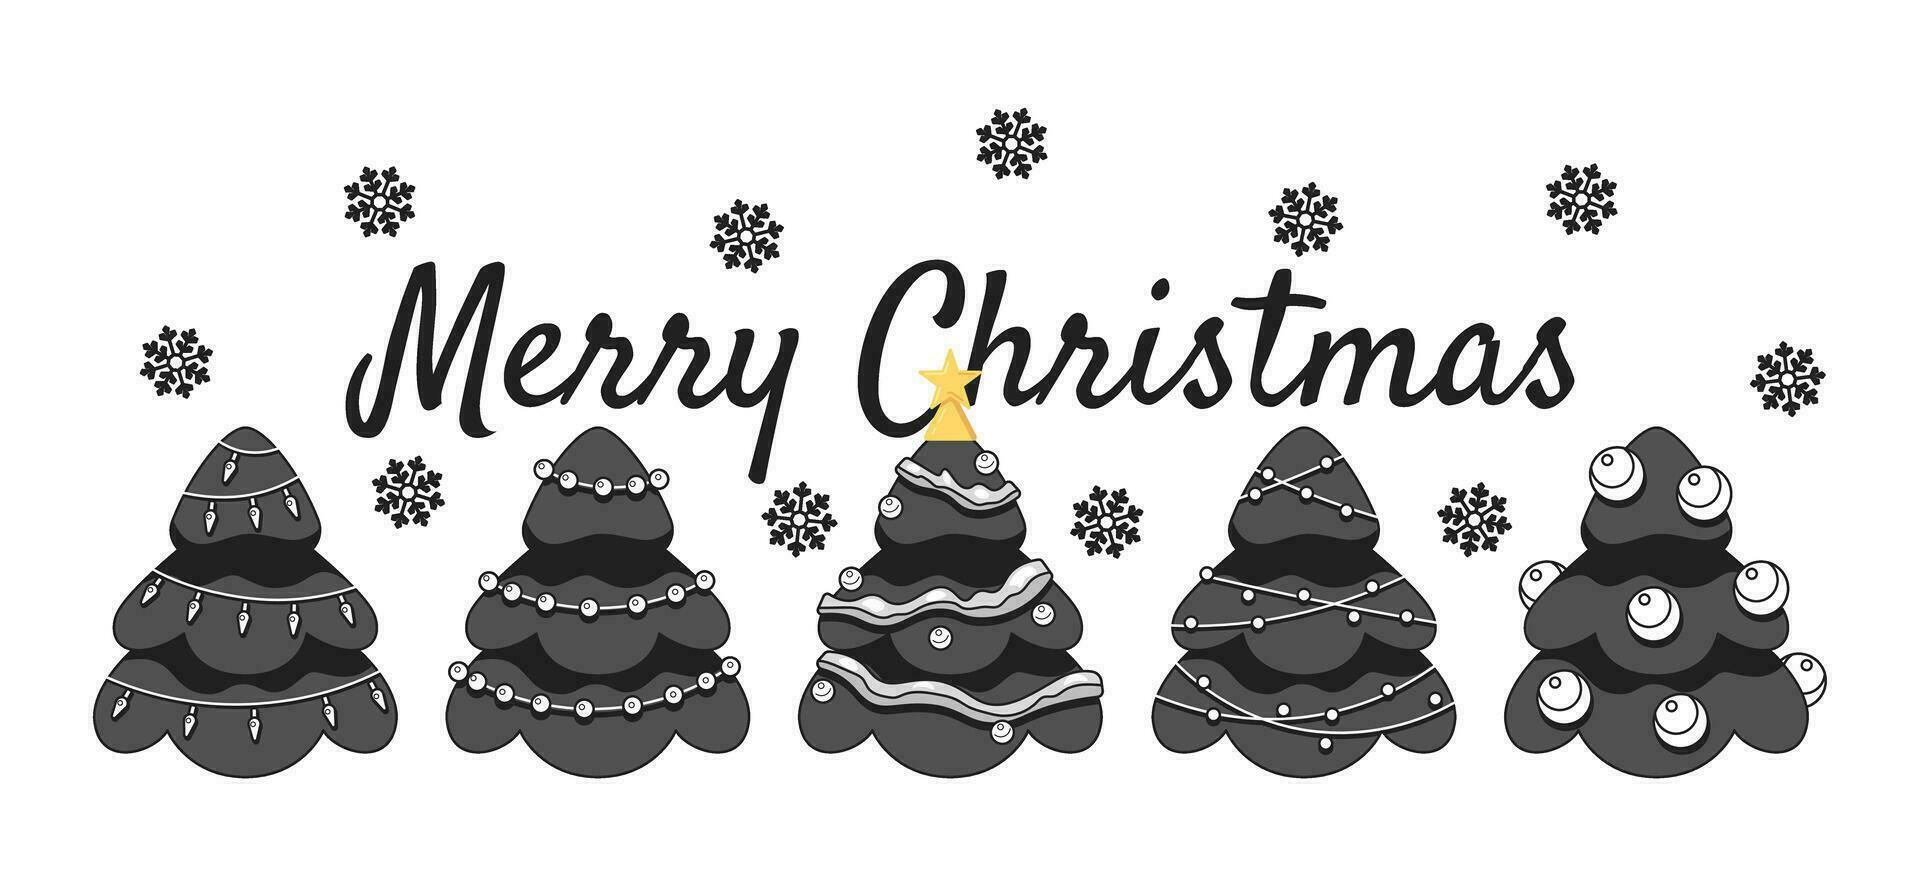 Gefeliciteerd vrolijk Kerstmis monochroom groet kaart vector. sneeuwvlokken Kerstmis bomen zwart en wit illustratie wenskaart. winter 2d schets tekenfilm e-card, speciaal gelegenheid ansichtkaart beeld vector